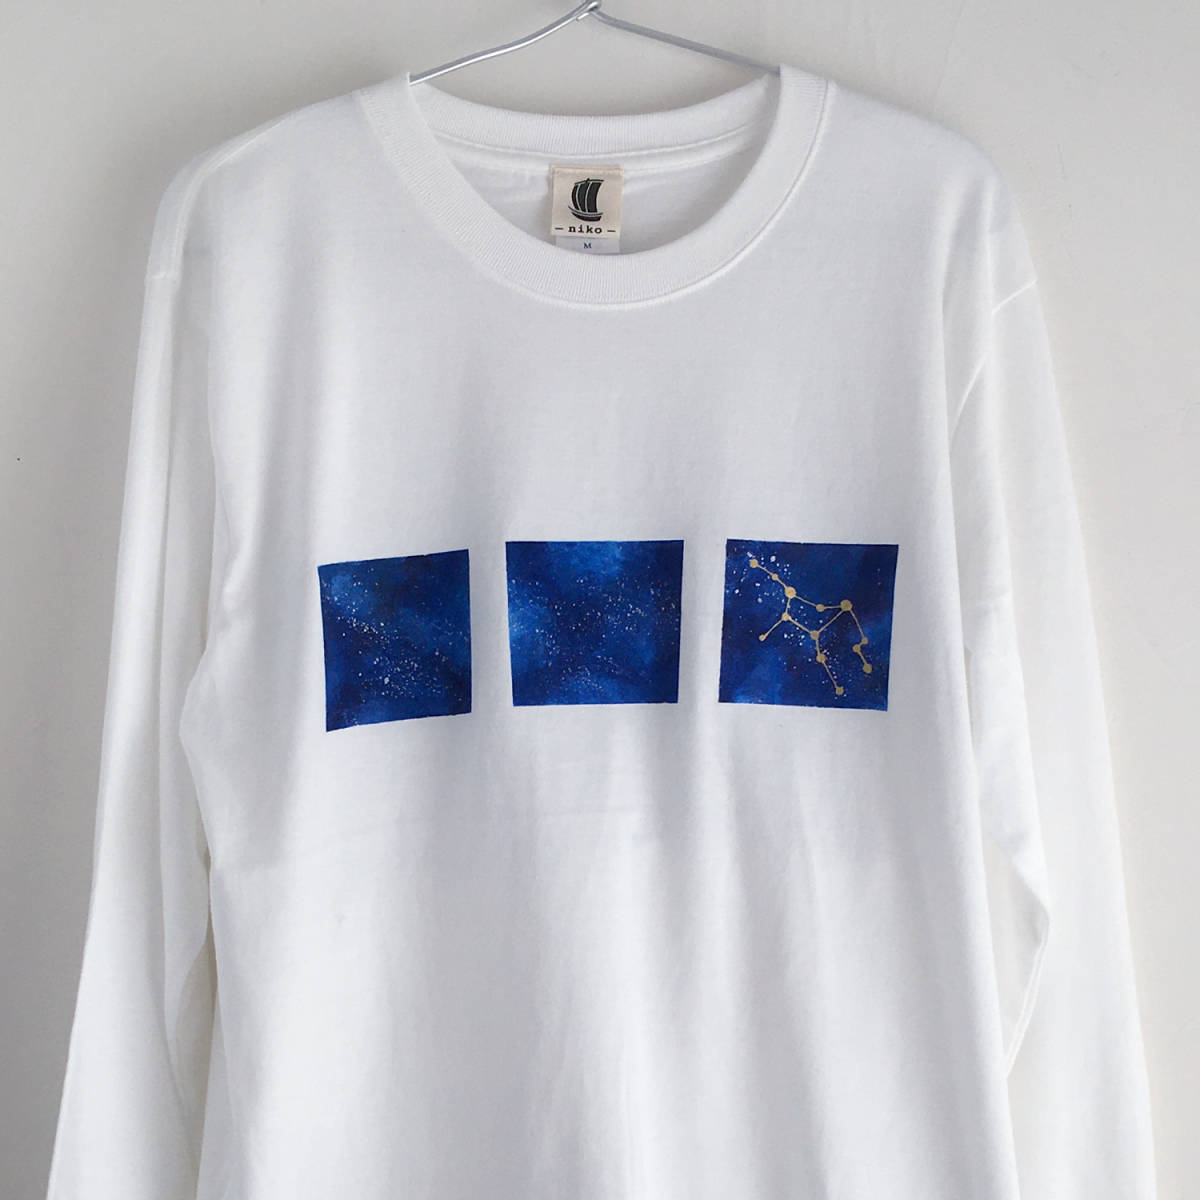 Handgezeichnetes Langarm-T-Shirt mit Weltraummuster und 12 Sternbildern zur Auswahl, Weiß, XL-Größe, Galaxis, gerippte Ärmel, langes T-Shirt, T-Shirt, lange Ärmel, Größe XL und größer